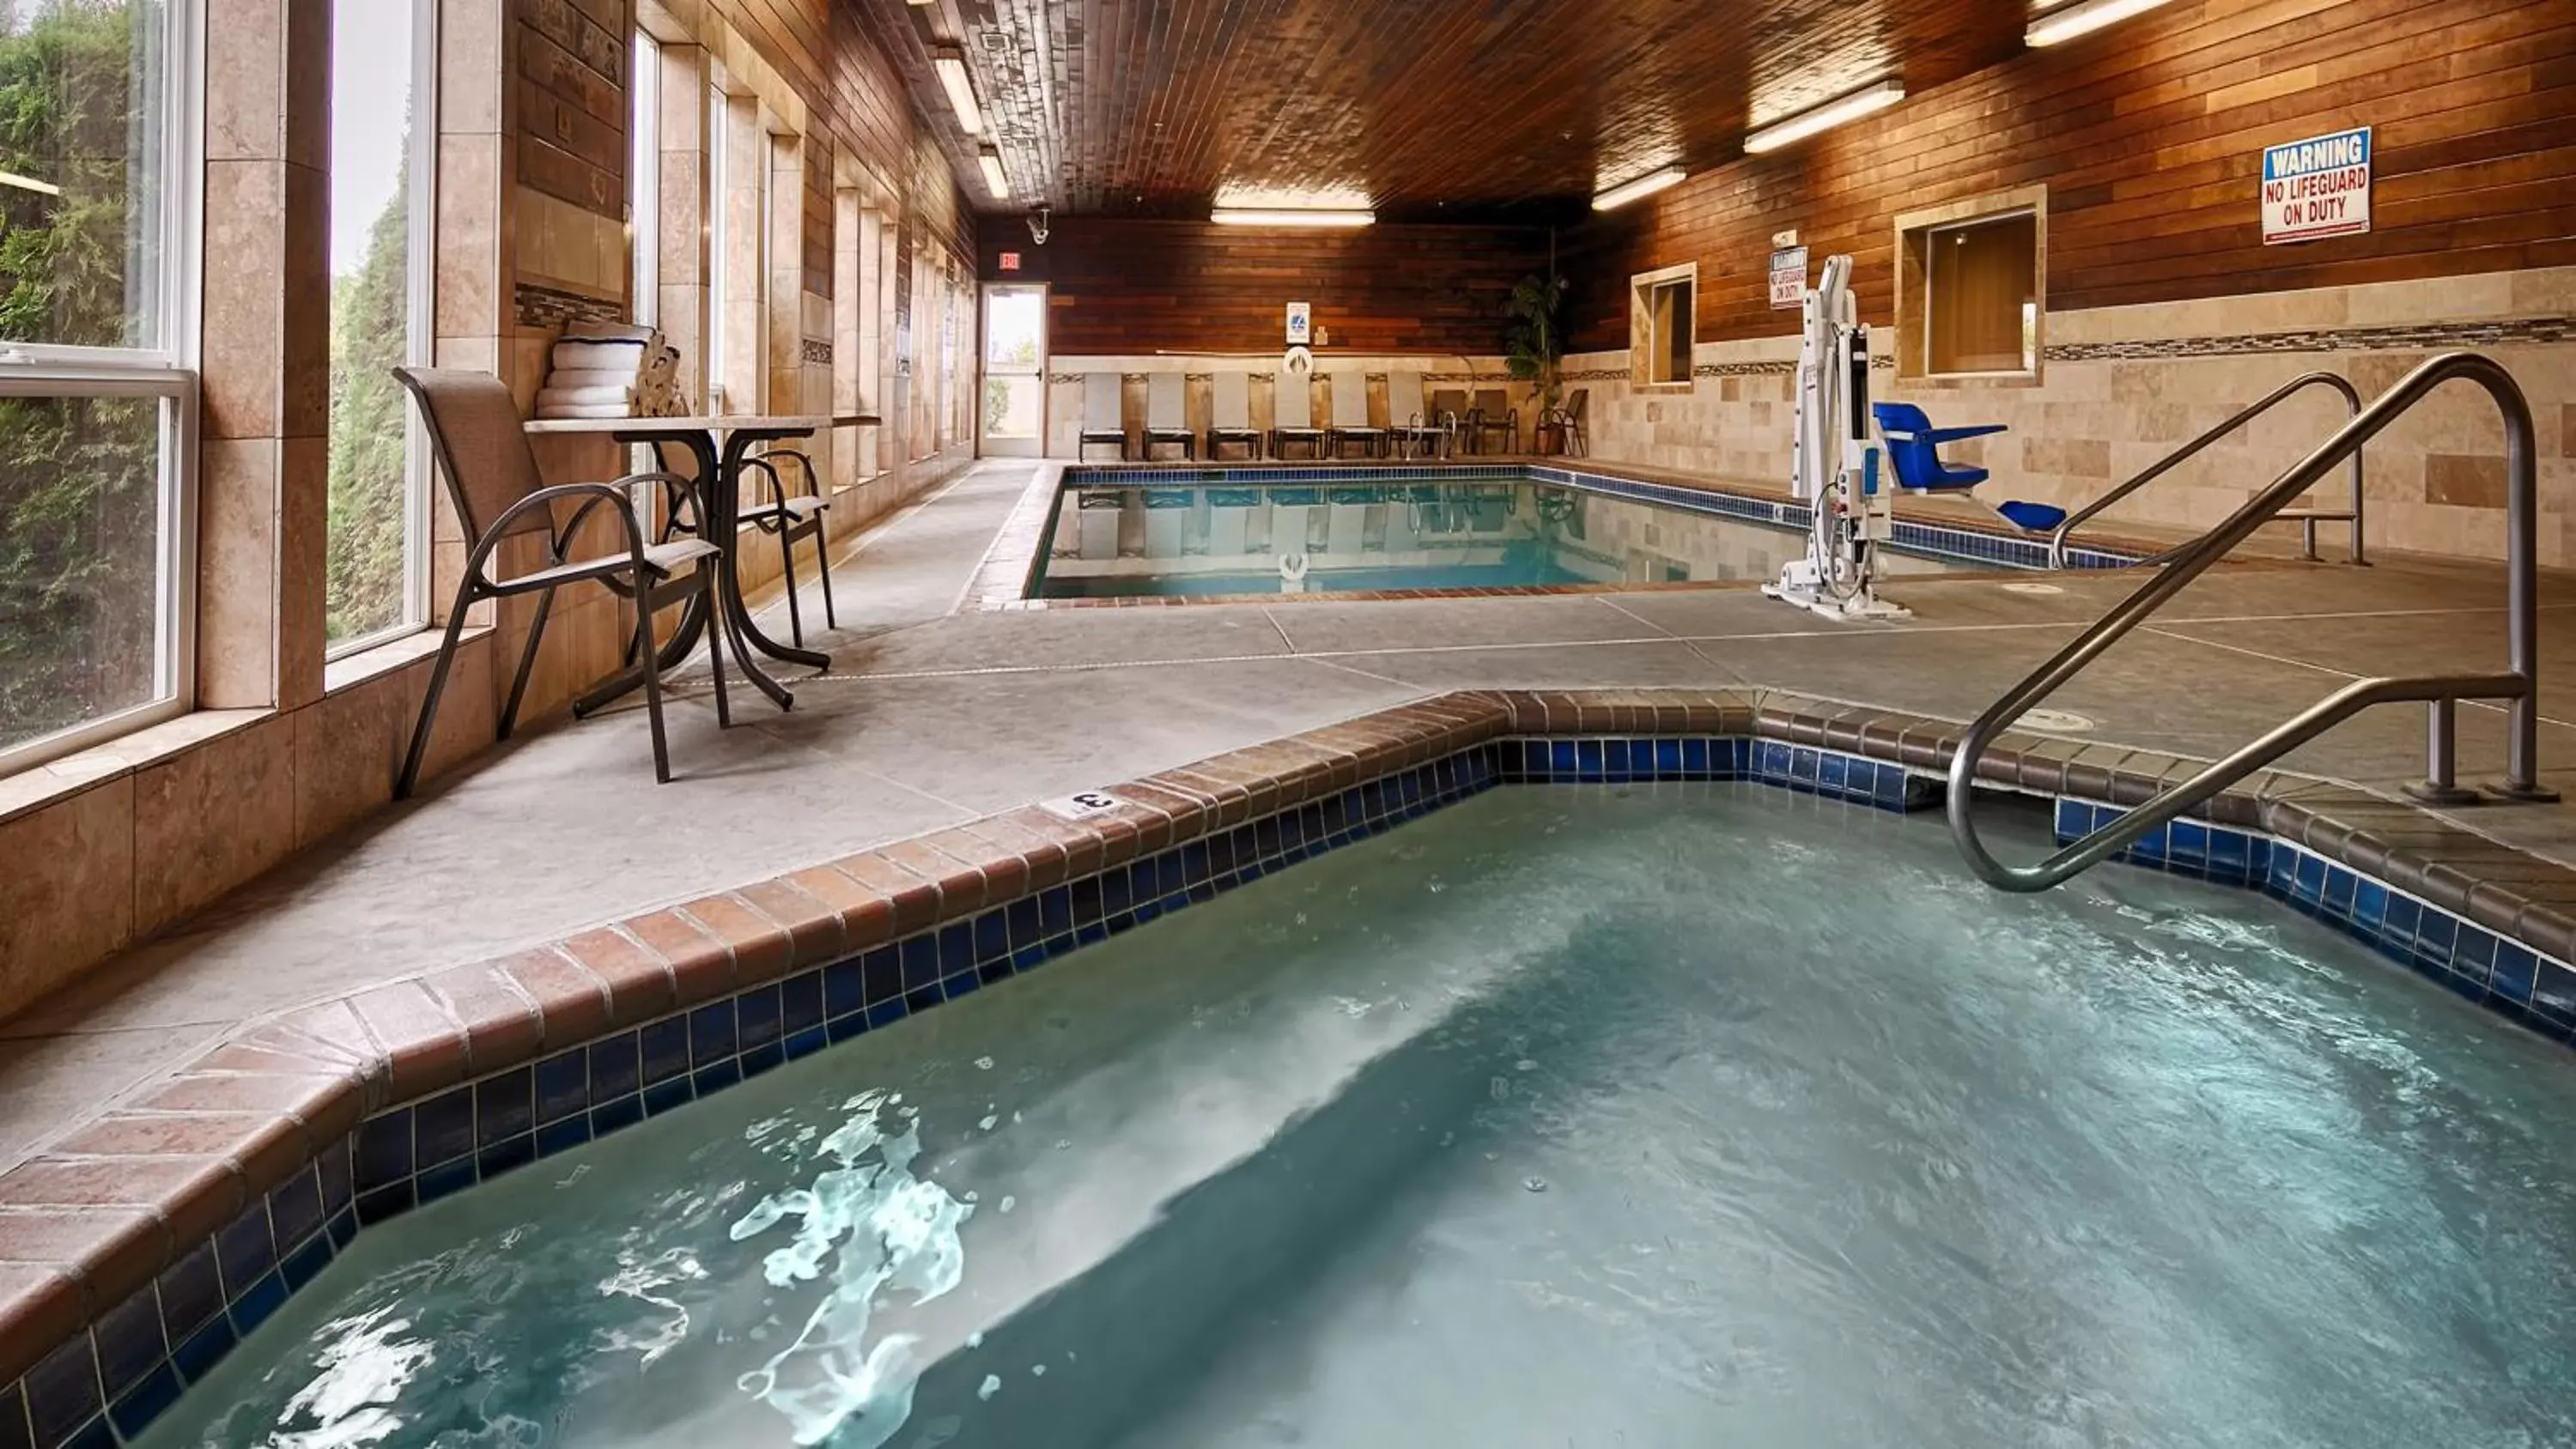 On site, Swimming Pool in Best Western Plus Landmark Inn